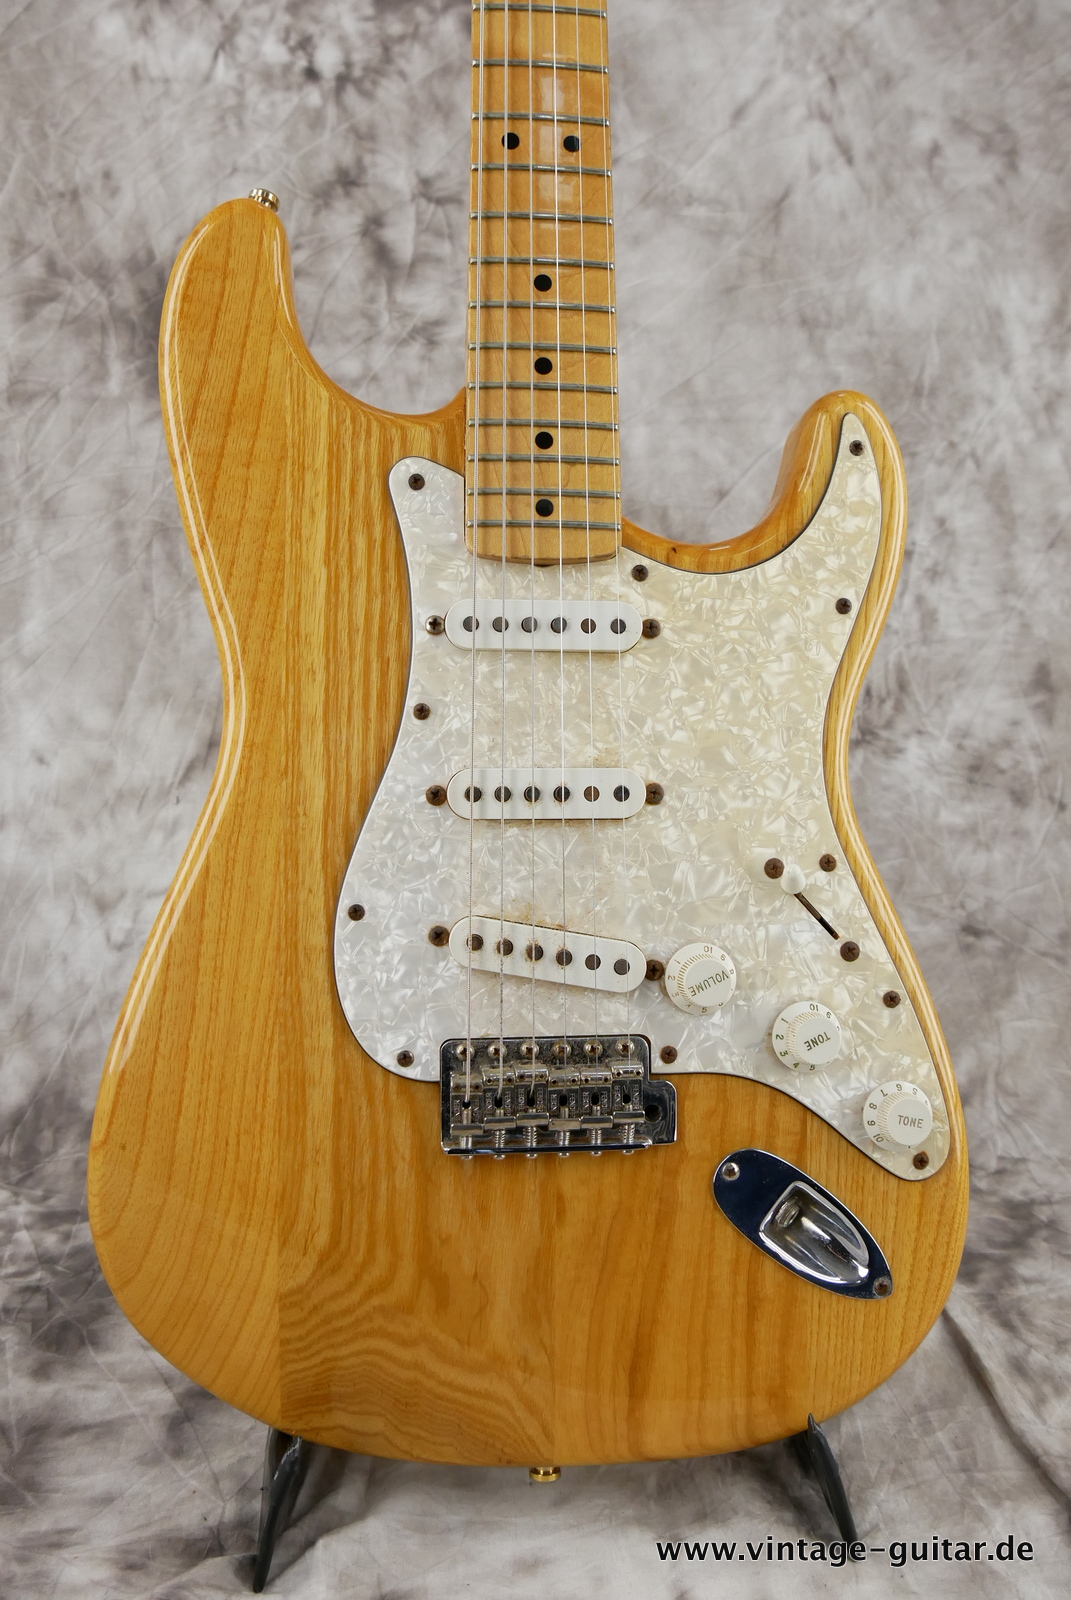 Fender_Stratocaster_70s_reissue_maple_neck_1999_Mexico-003.JPG